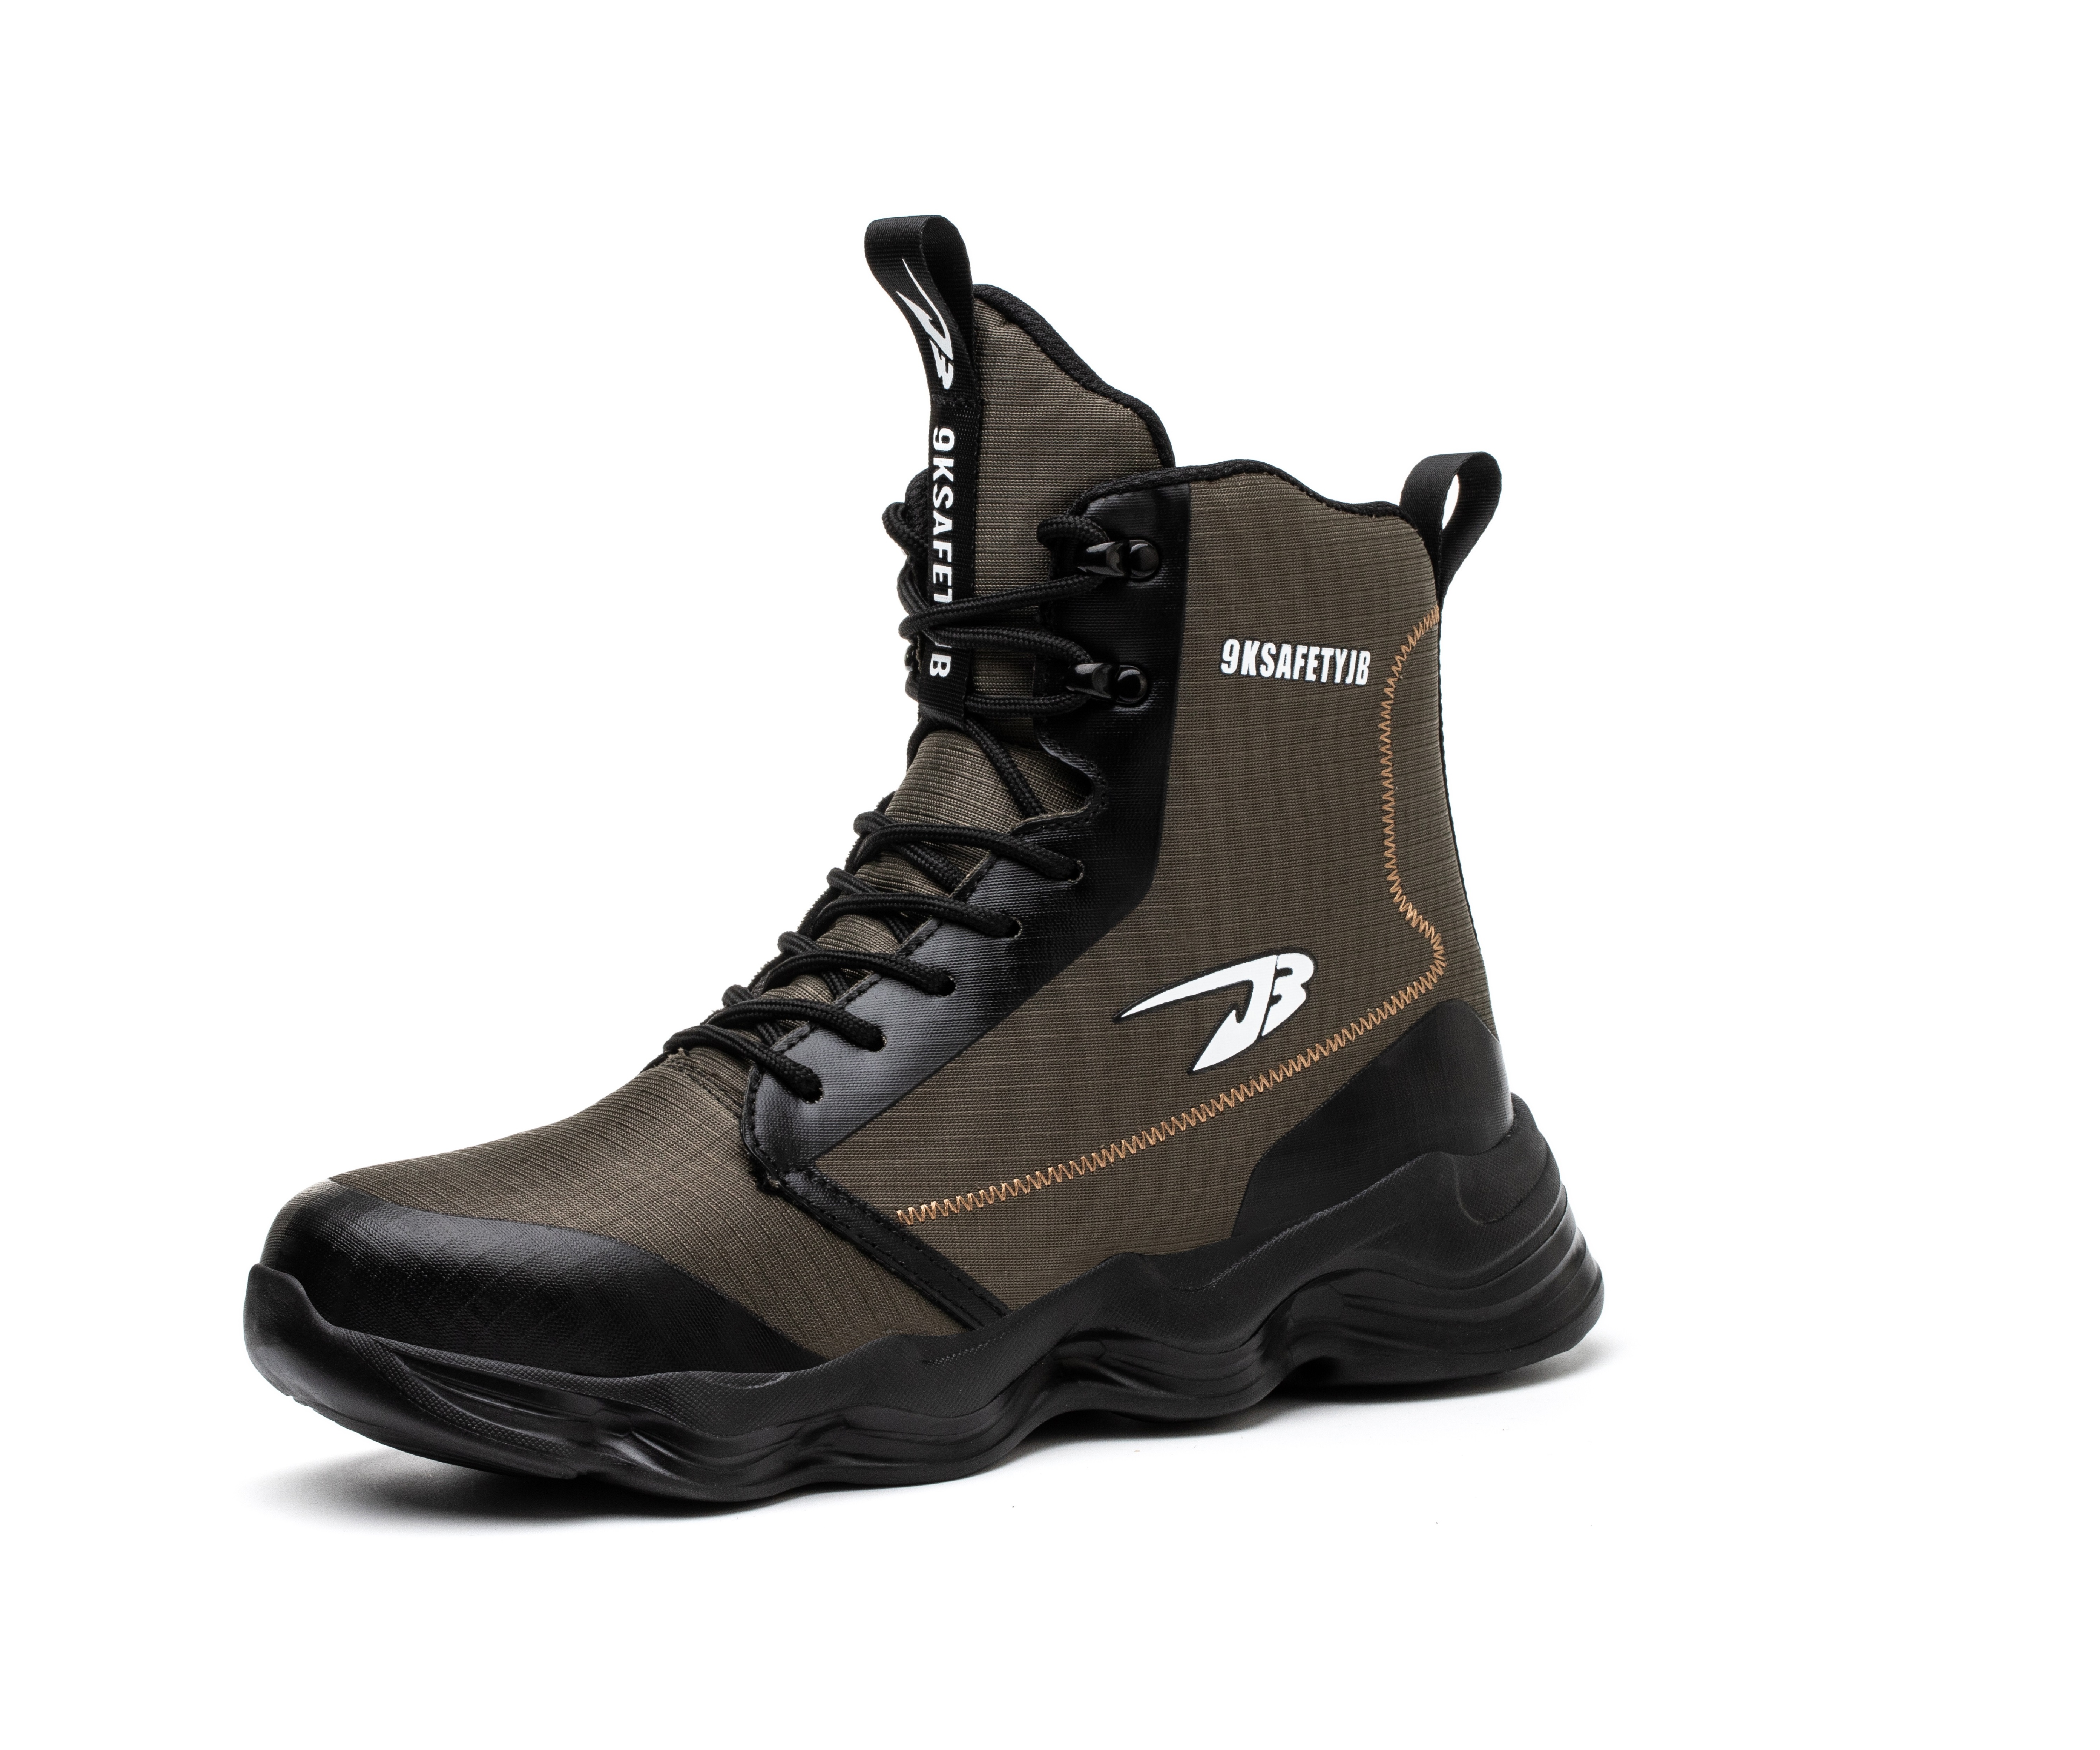 Men's Steel Toe Safety Boots - Model 9991 SafeAlex.com